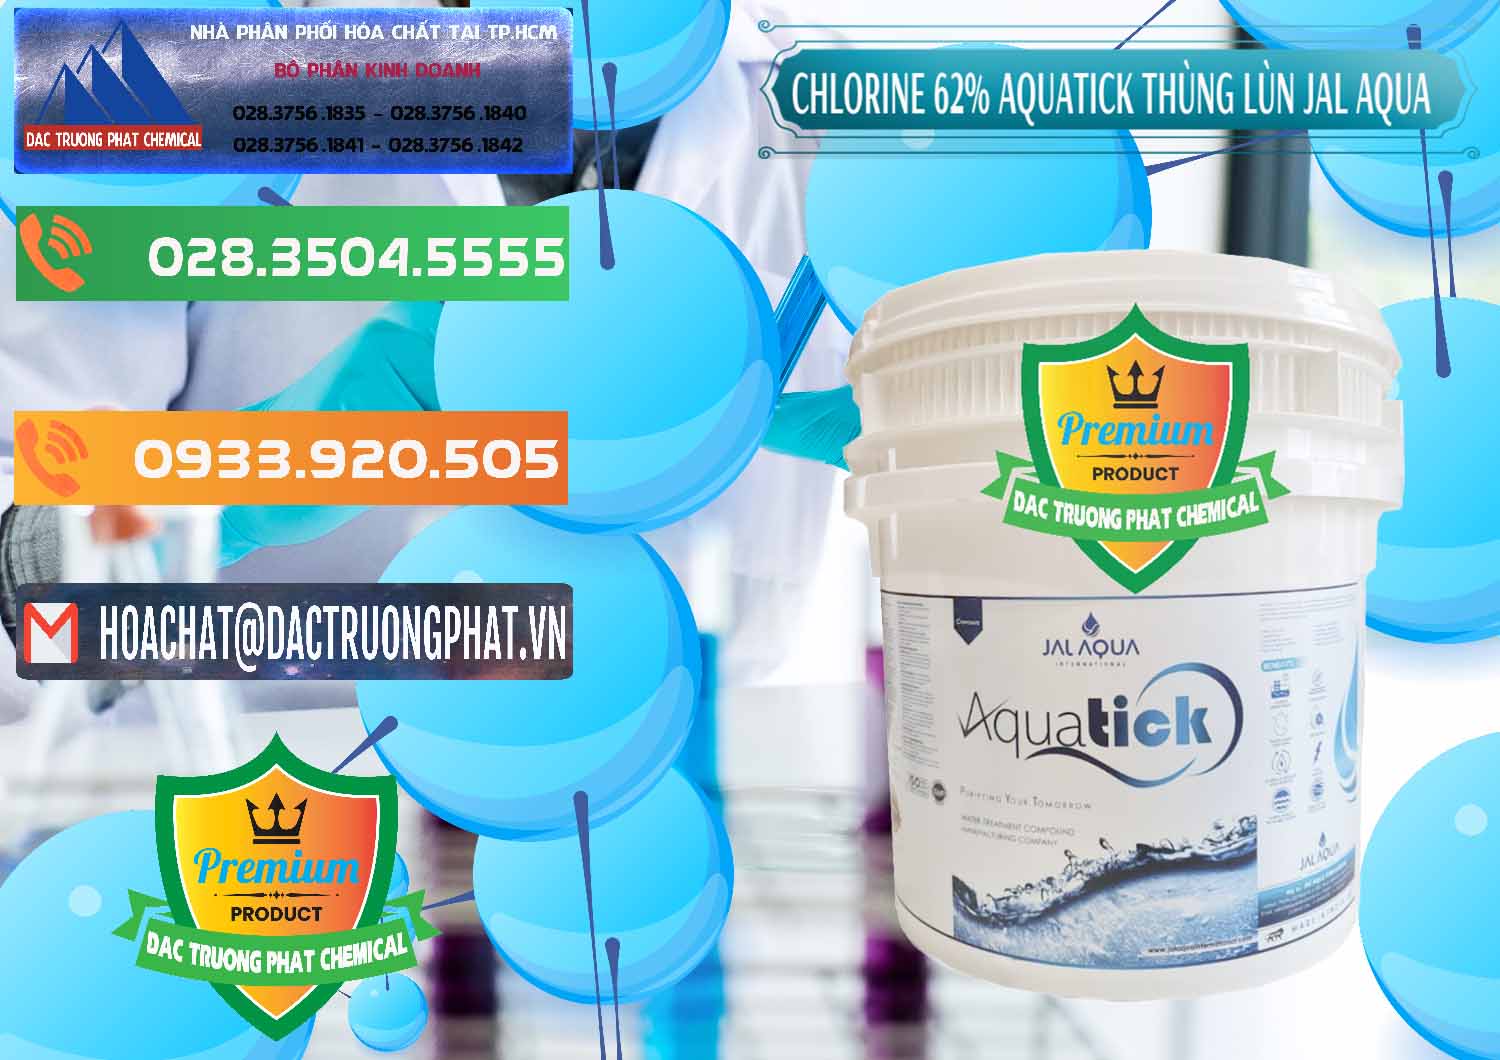 Nơi phân phối và bán Chlorine – Clorin 62% Aquatick Thùng Lùn Jal Aqua Ấn Độ India - 0238 - Đơn vị phân phối & bán hóa chất tại TP.HCM - hoachatxulynuoc.com.vn